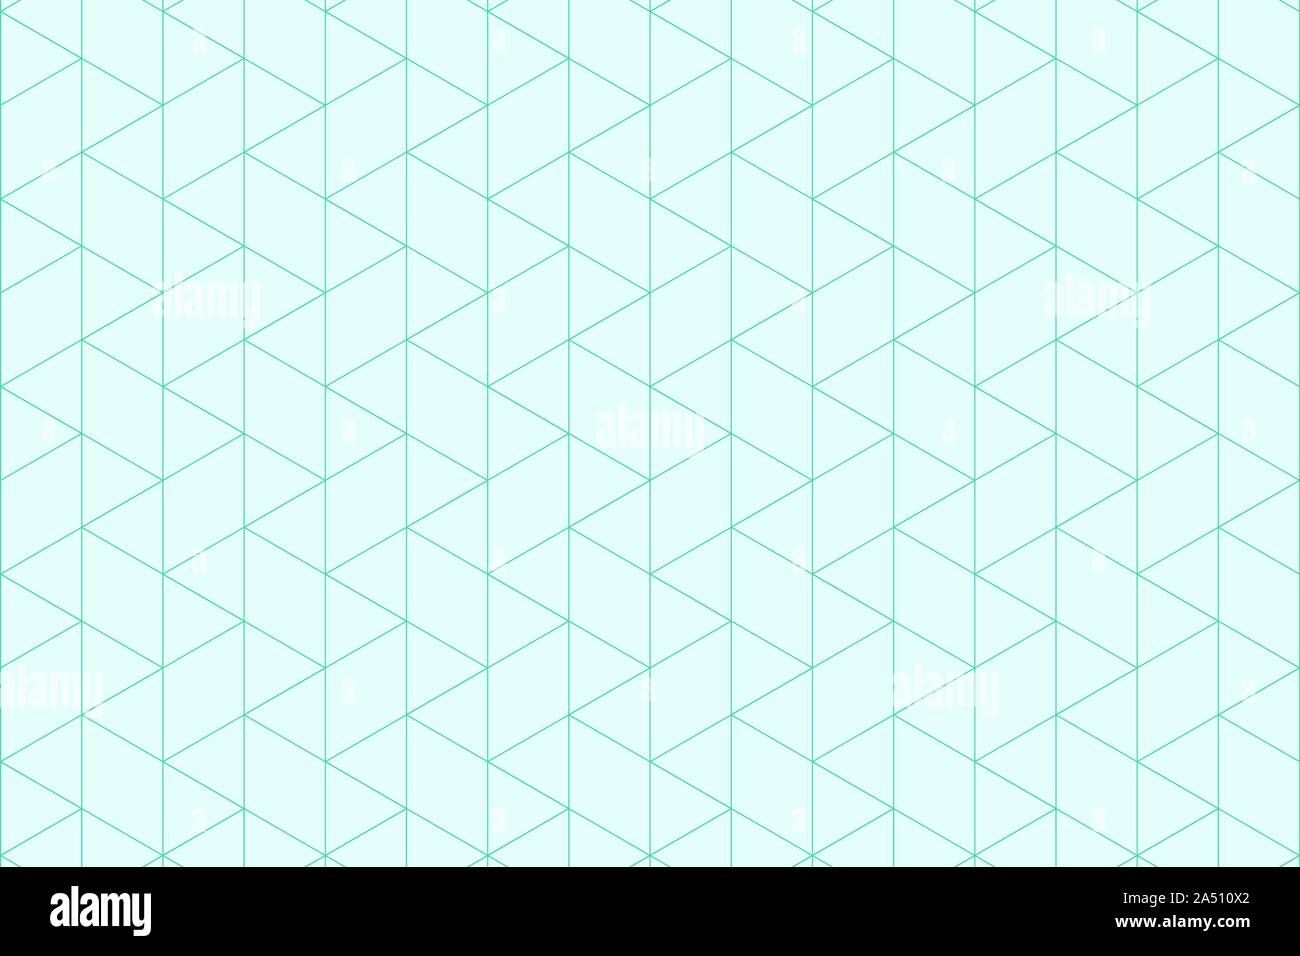 Abstrakt Blau Muster Dreiecke von minimalen einfachen Hintergrund. Für einfache Design, ad, Artwork, Textur dekorieren. Vector EPS 10. Stock Vektor